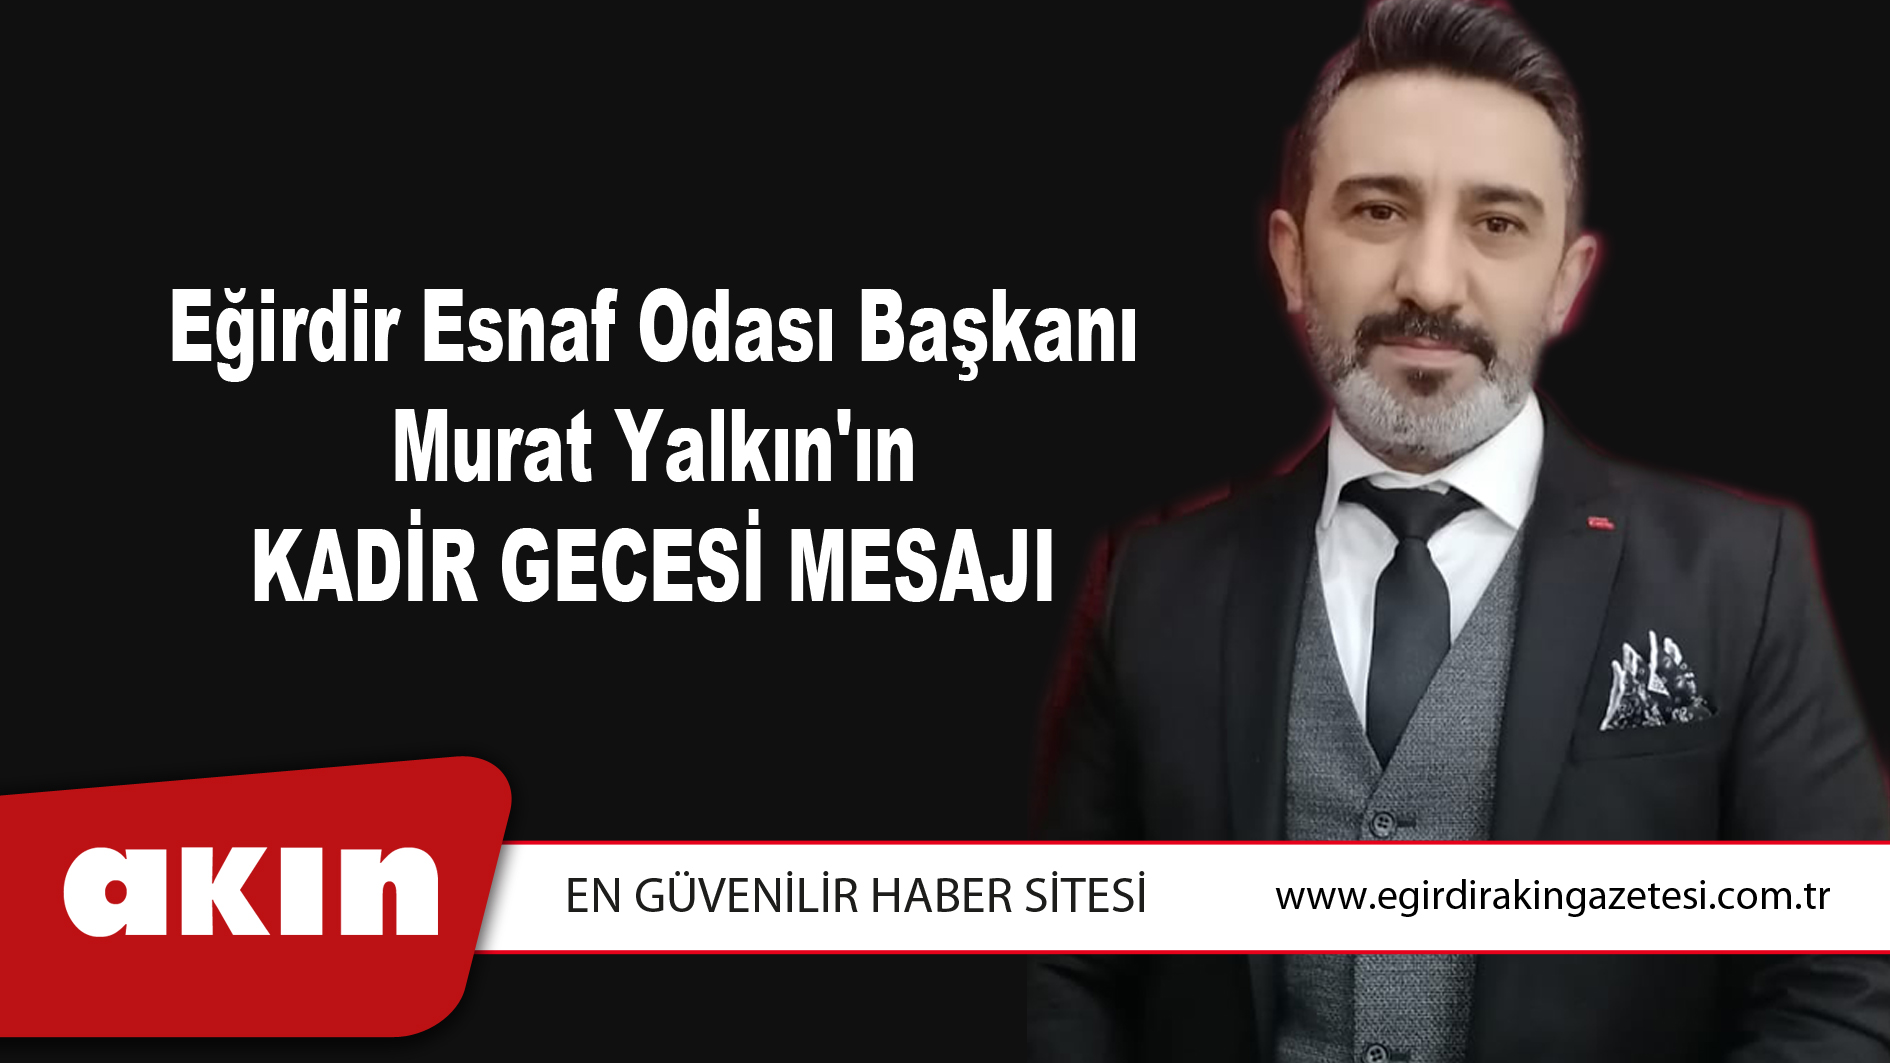 Eğirdir Esnaf Odası Başkanı Murat Yalkın'ın Kadir Gecesi Mesajı